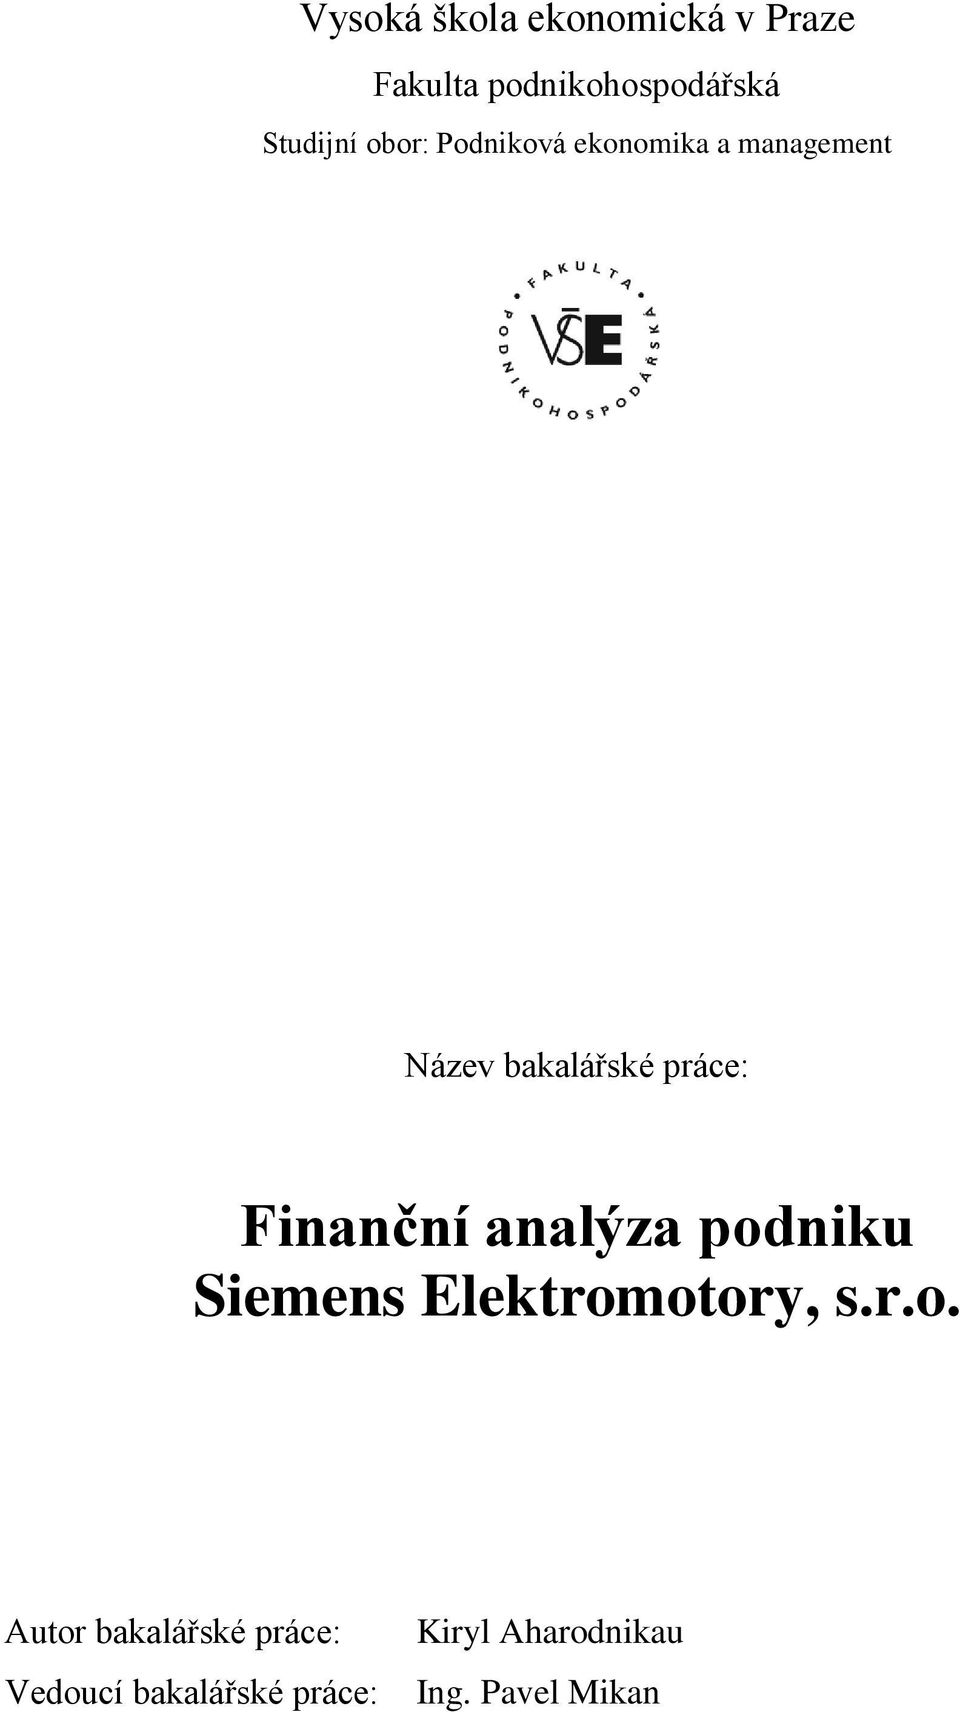 Finanční analýza pod